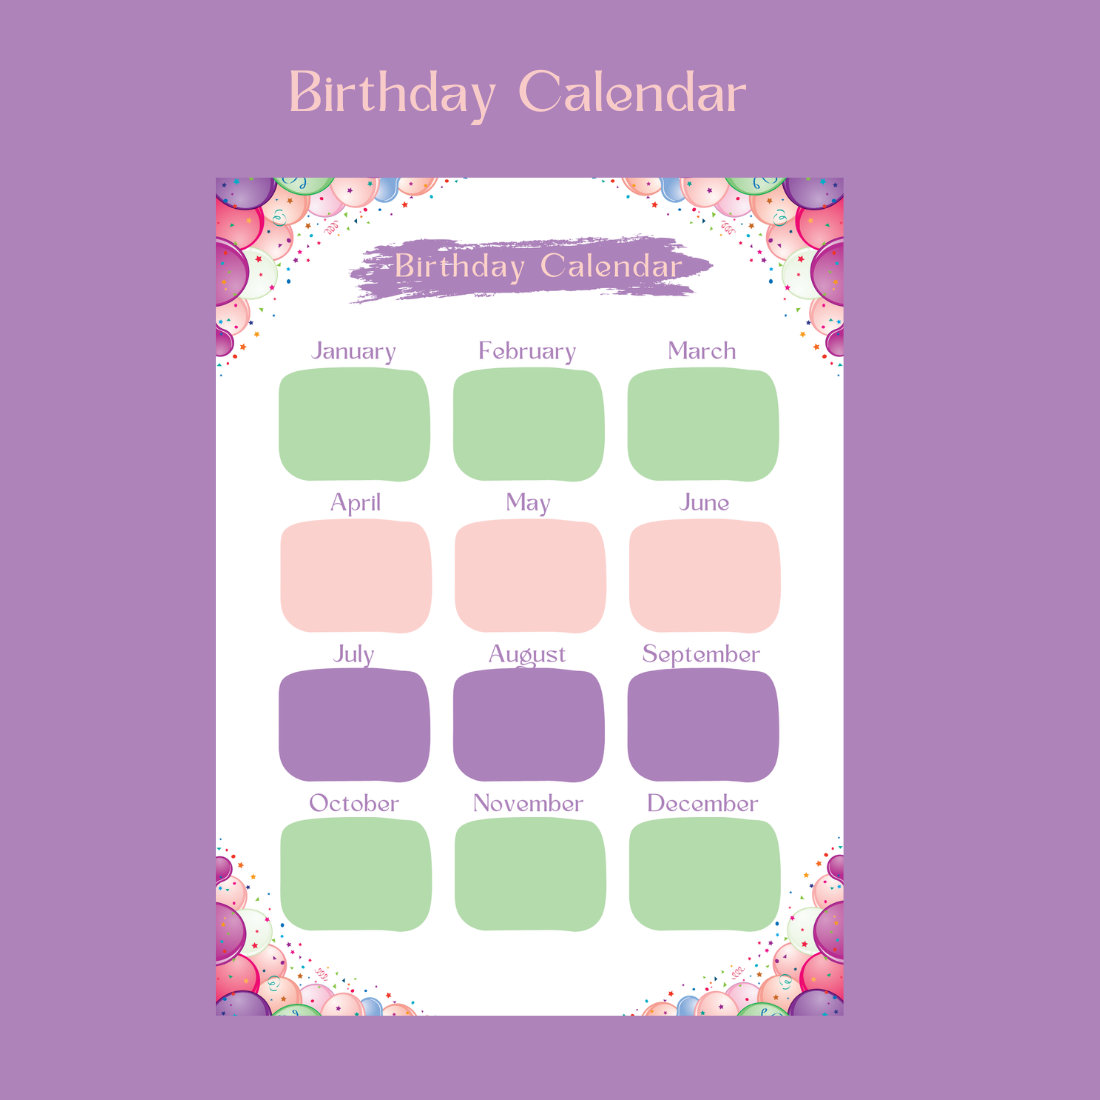 birthday calendar 1100 x 1100 px 529